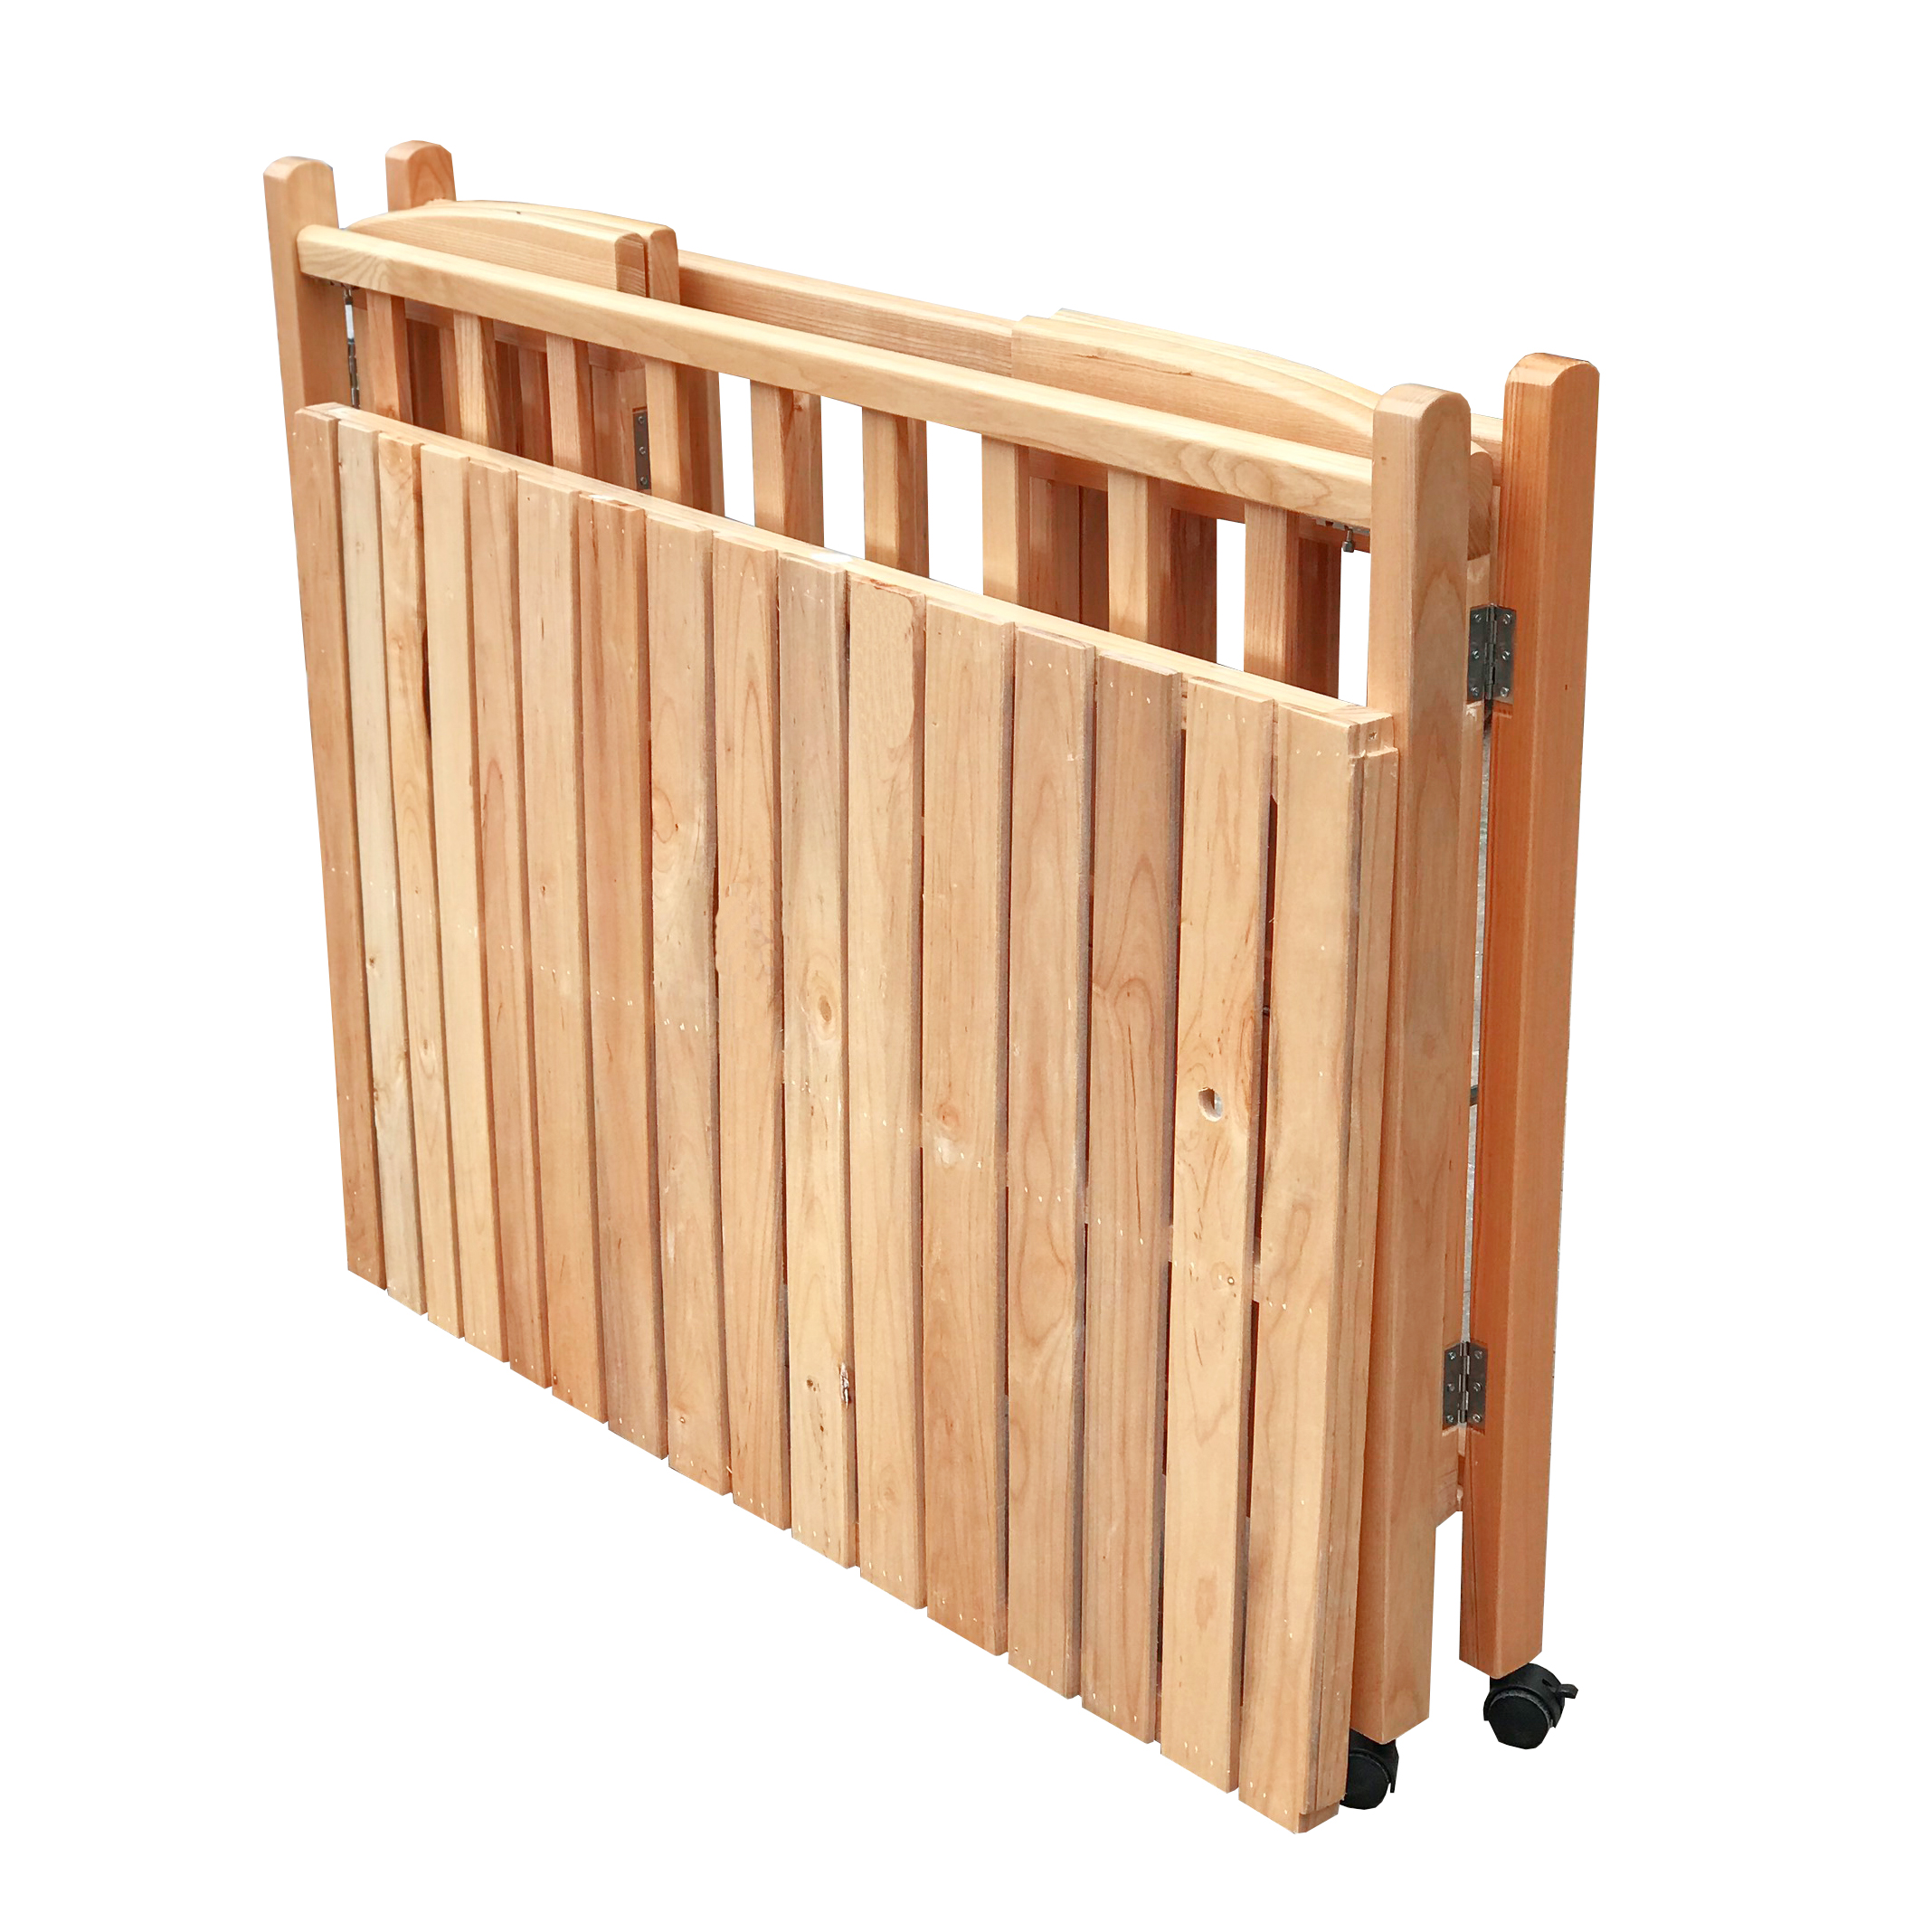 Cũi cho bé - Cũi giường gỗ Sồi cao cấp - Chất lượng và An toàn